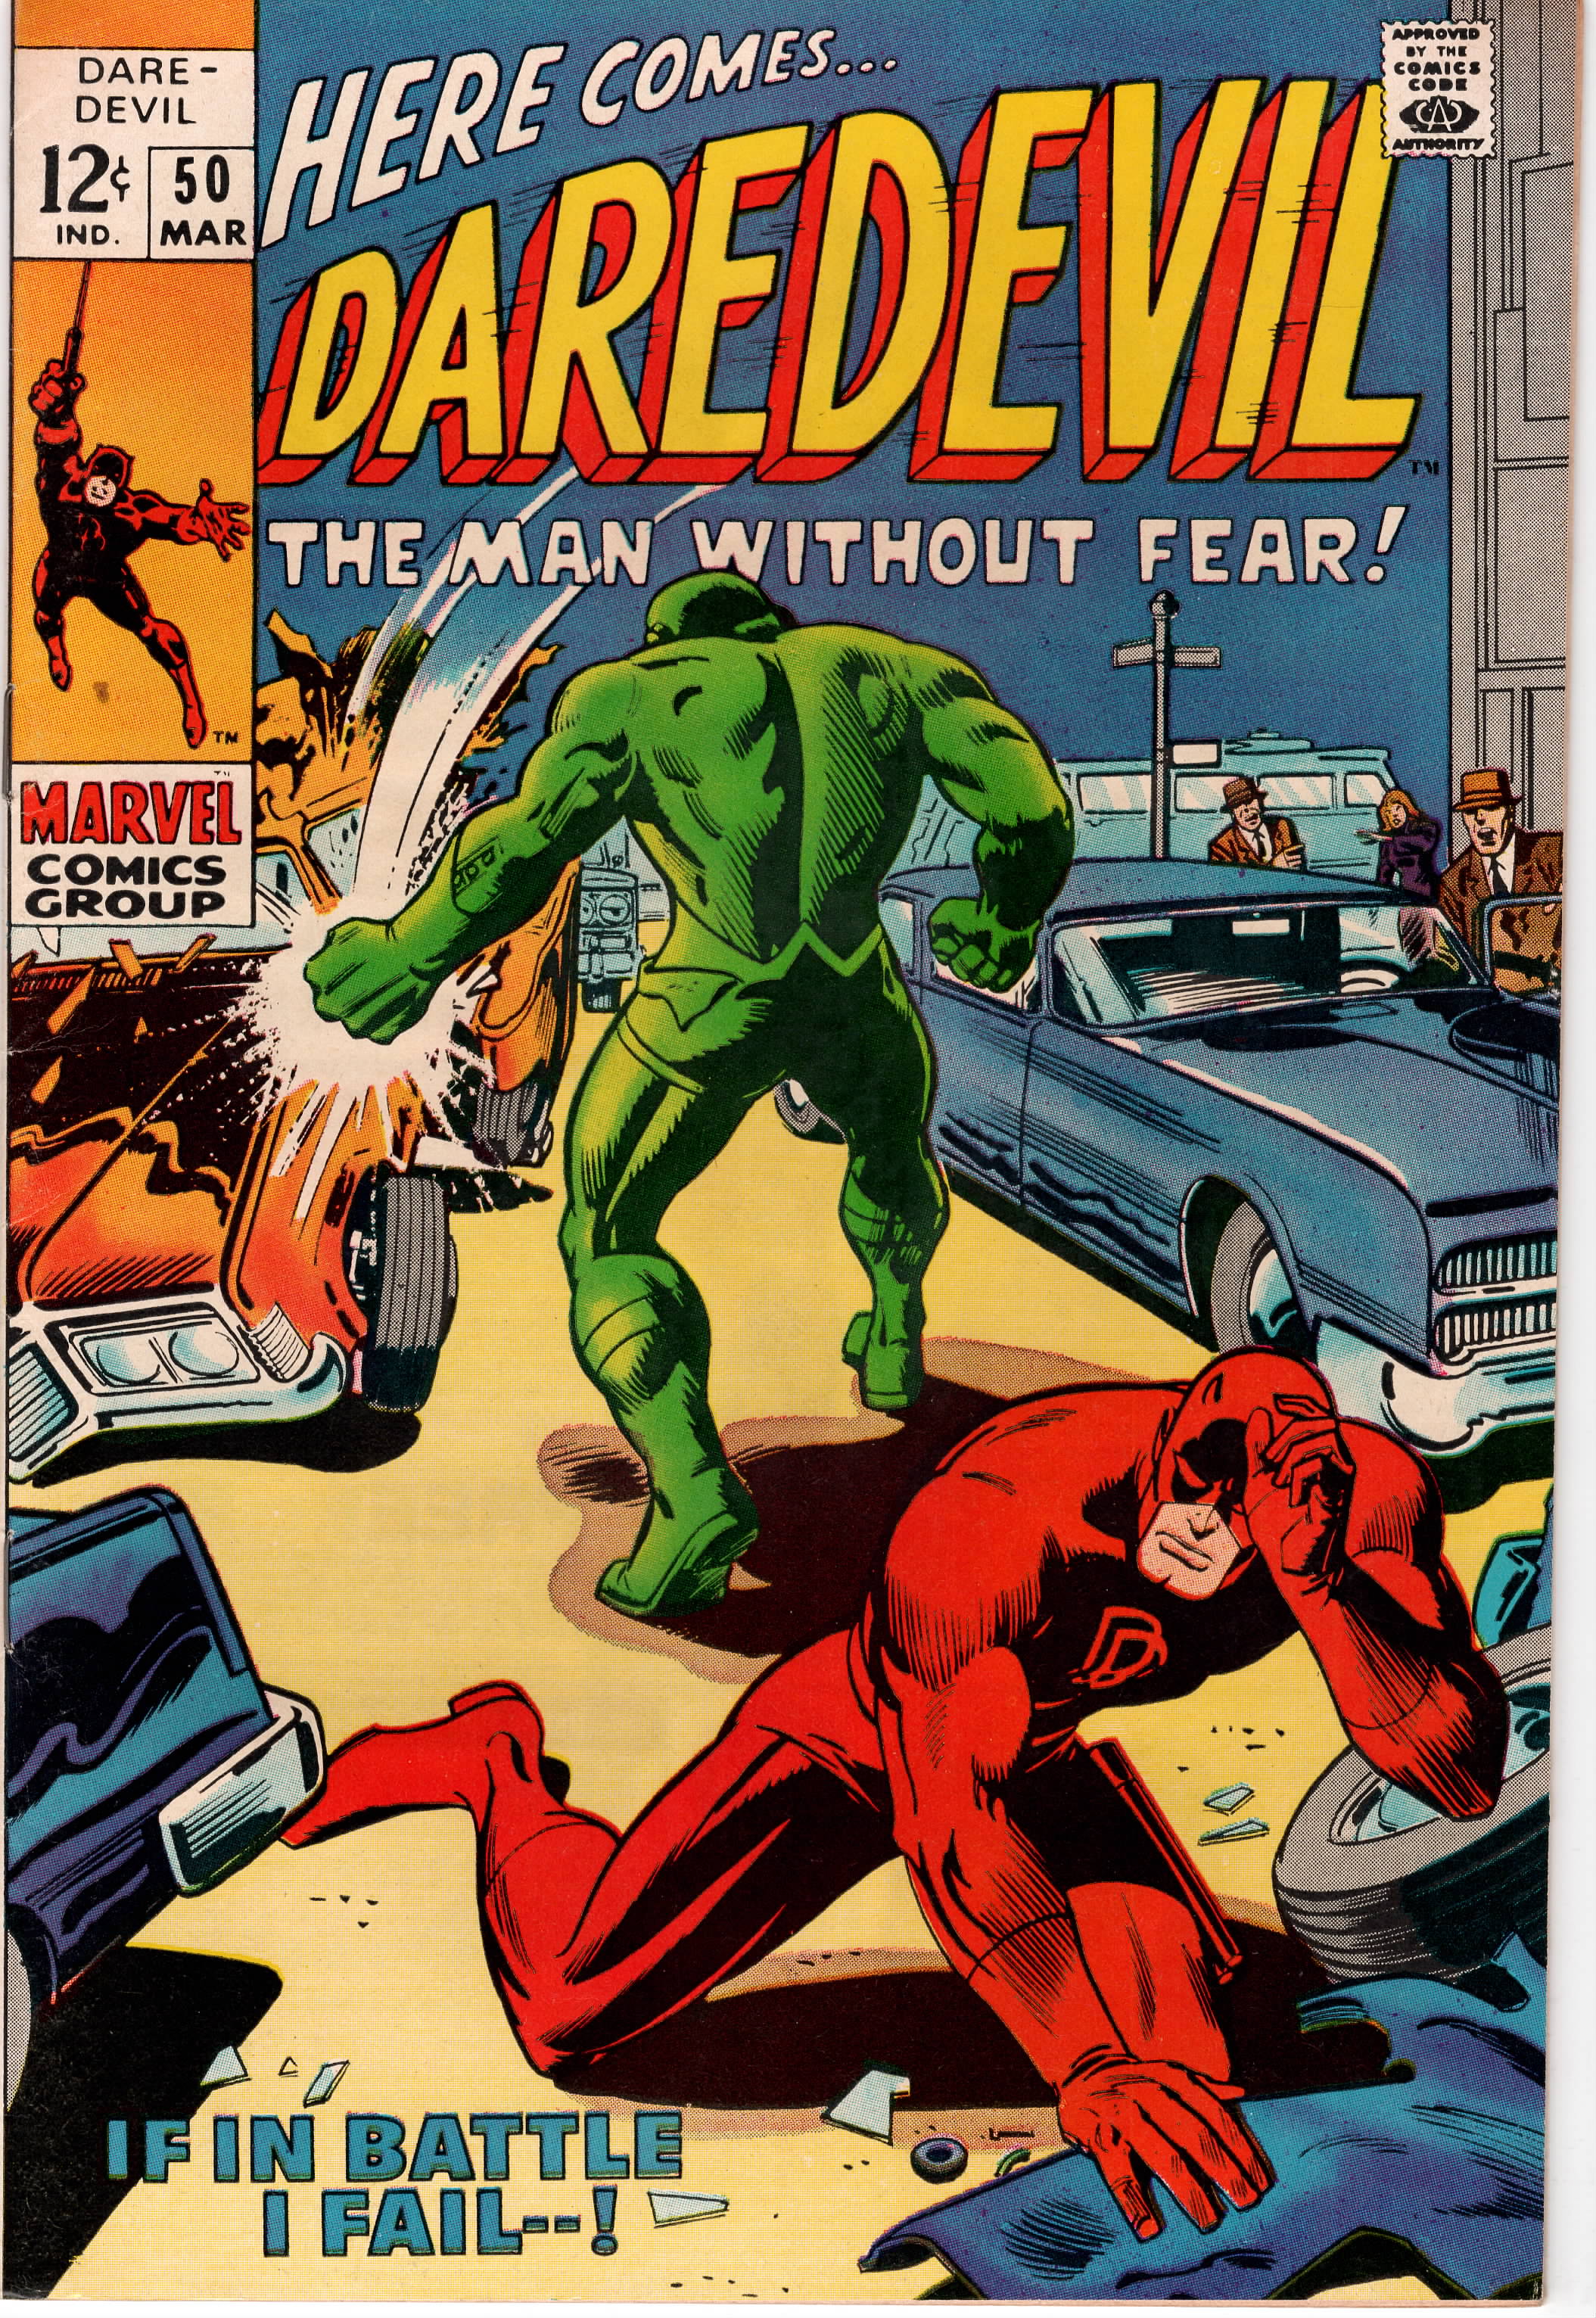 Daredevil #050